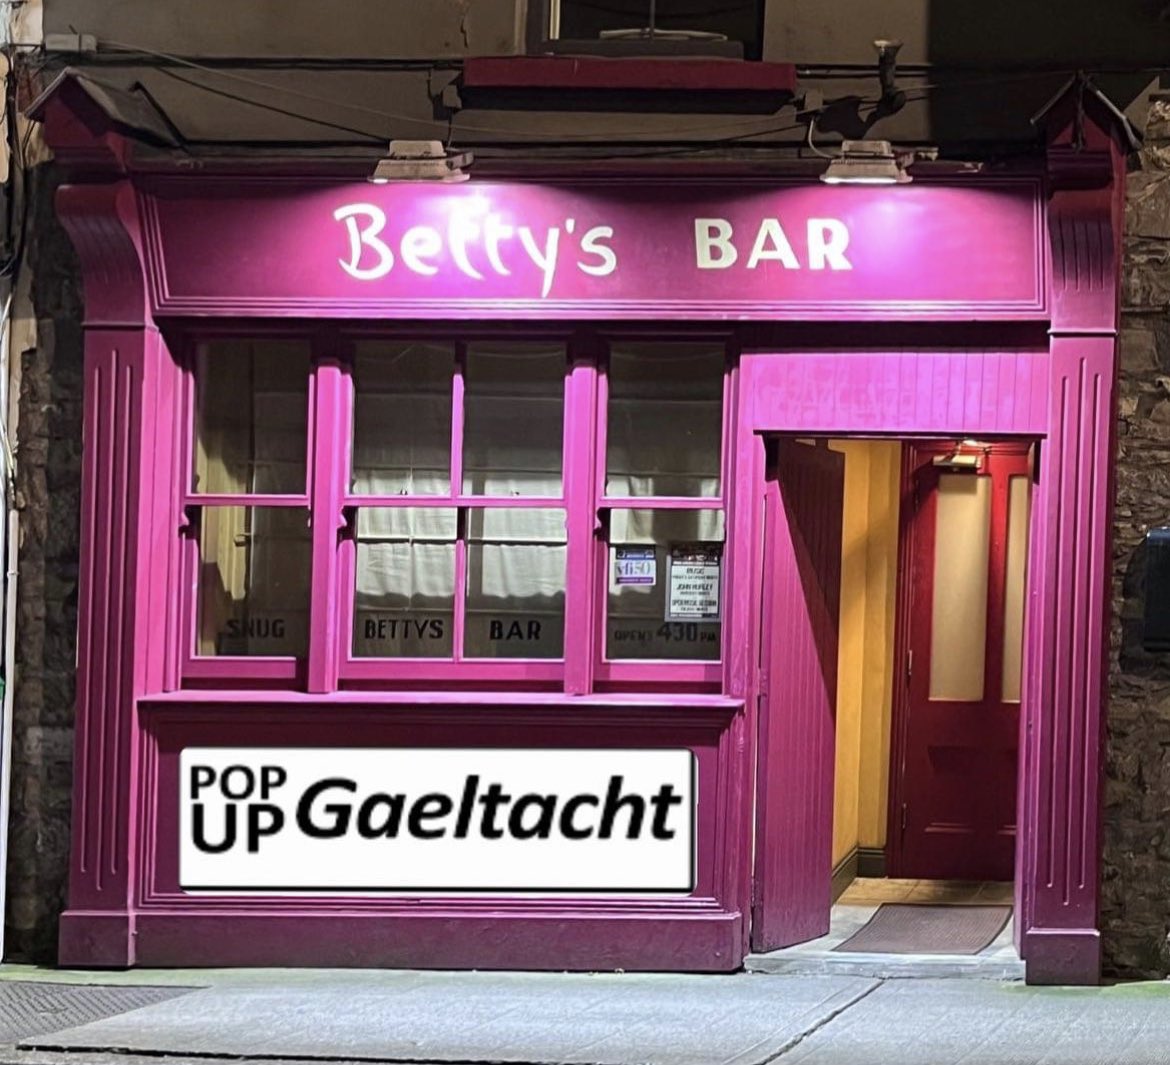 PopUp Gaeltacht na míosa a chairde: Dé hAoine, 20/10/23 Betty's Bar, 9i.n. Bígí linn. #trálílegaeilge #popupgaeltacht #gaeilge #trali